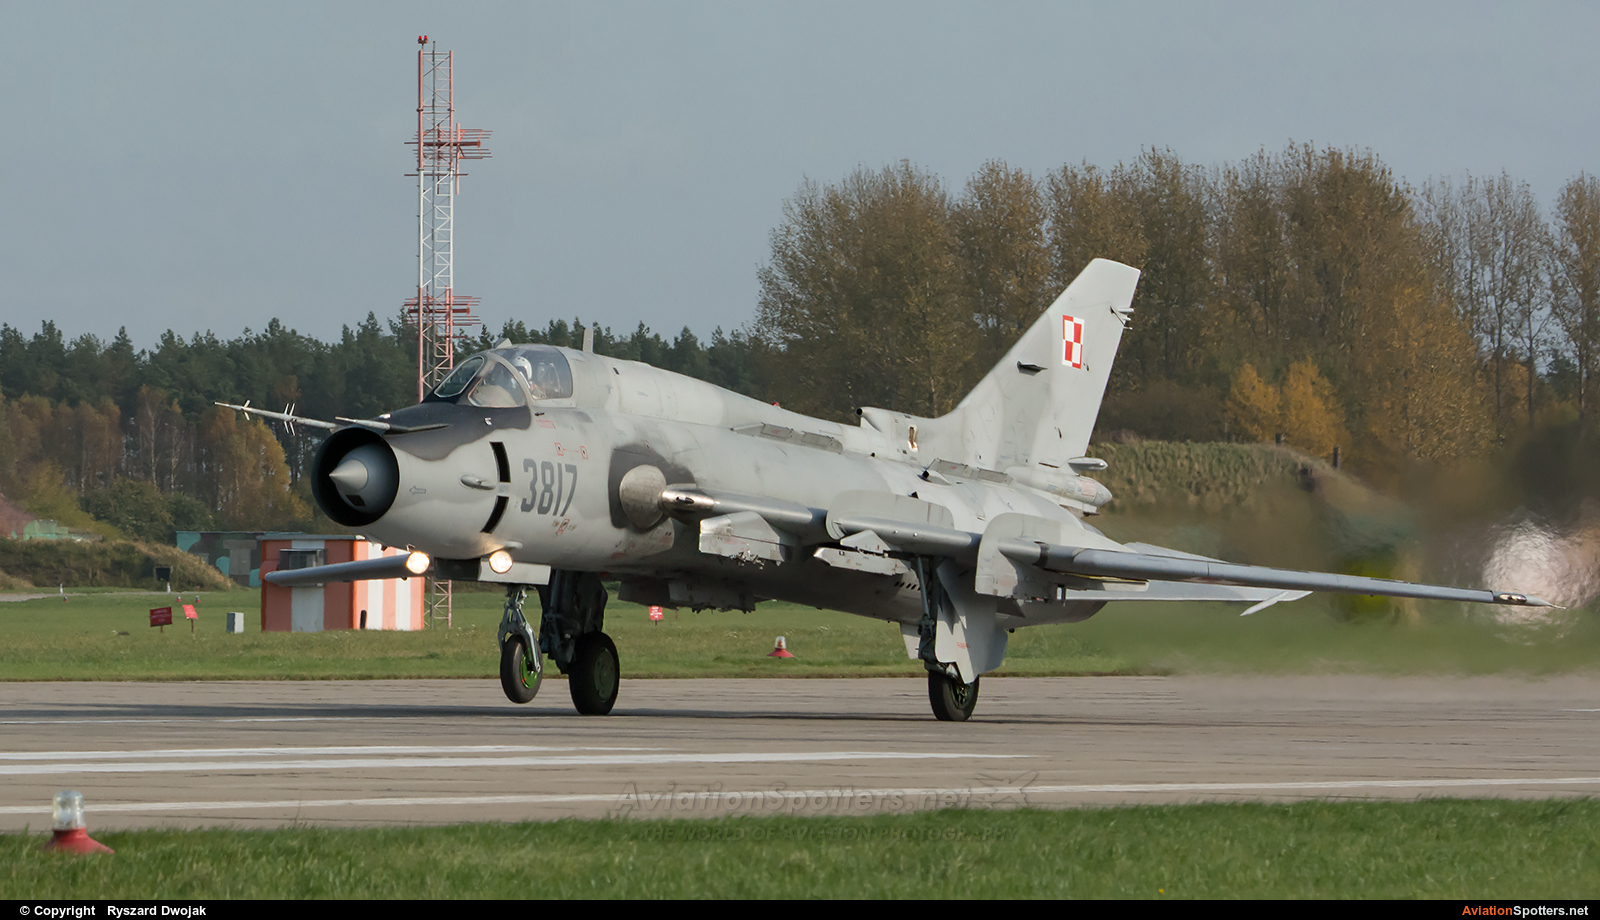 Poland - Air Force  -  Su-22M-4  (3817) By Ryszard Dwojak (ryś)